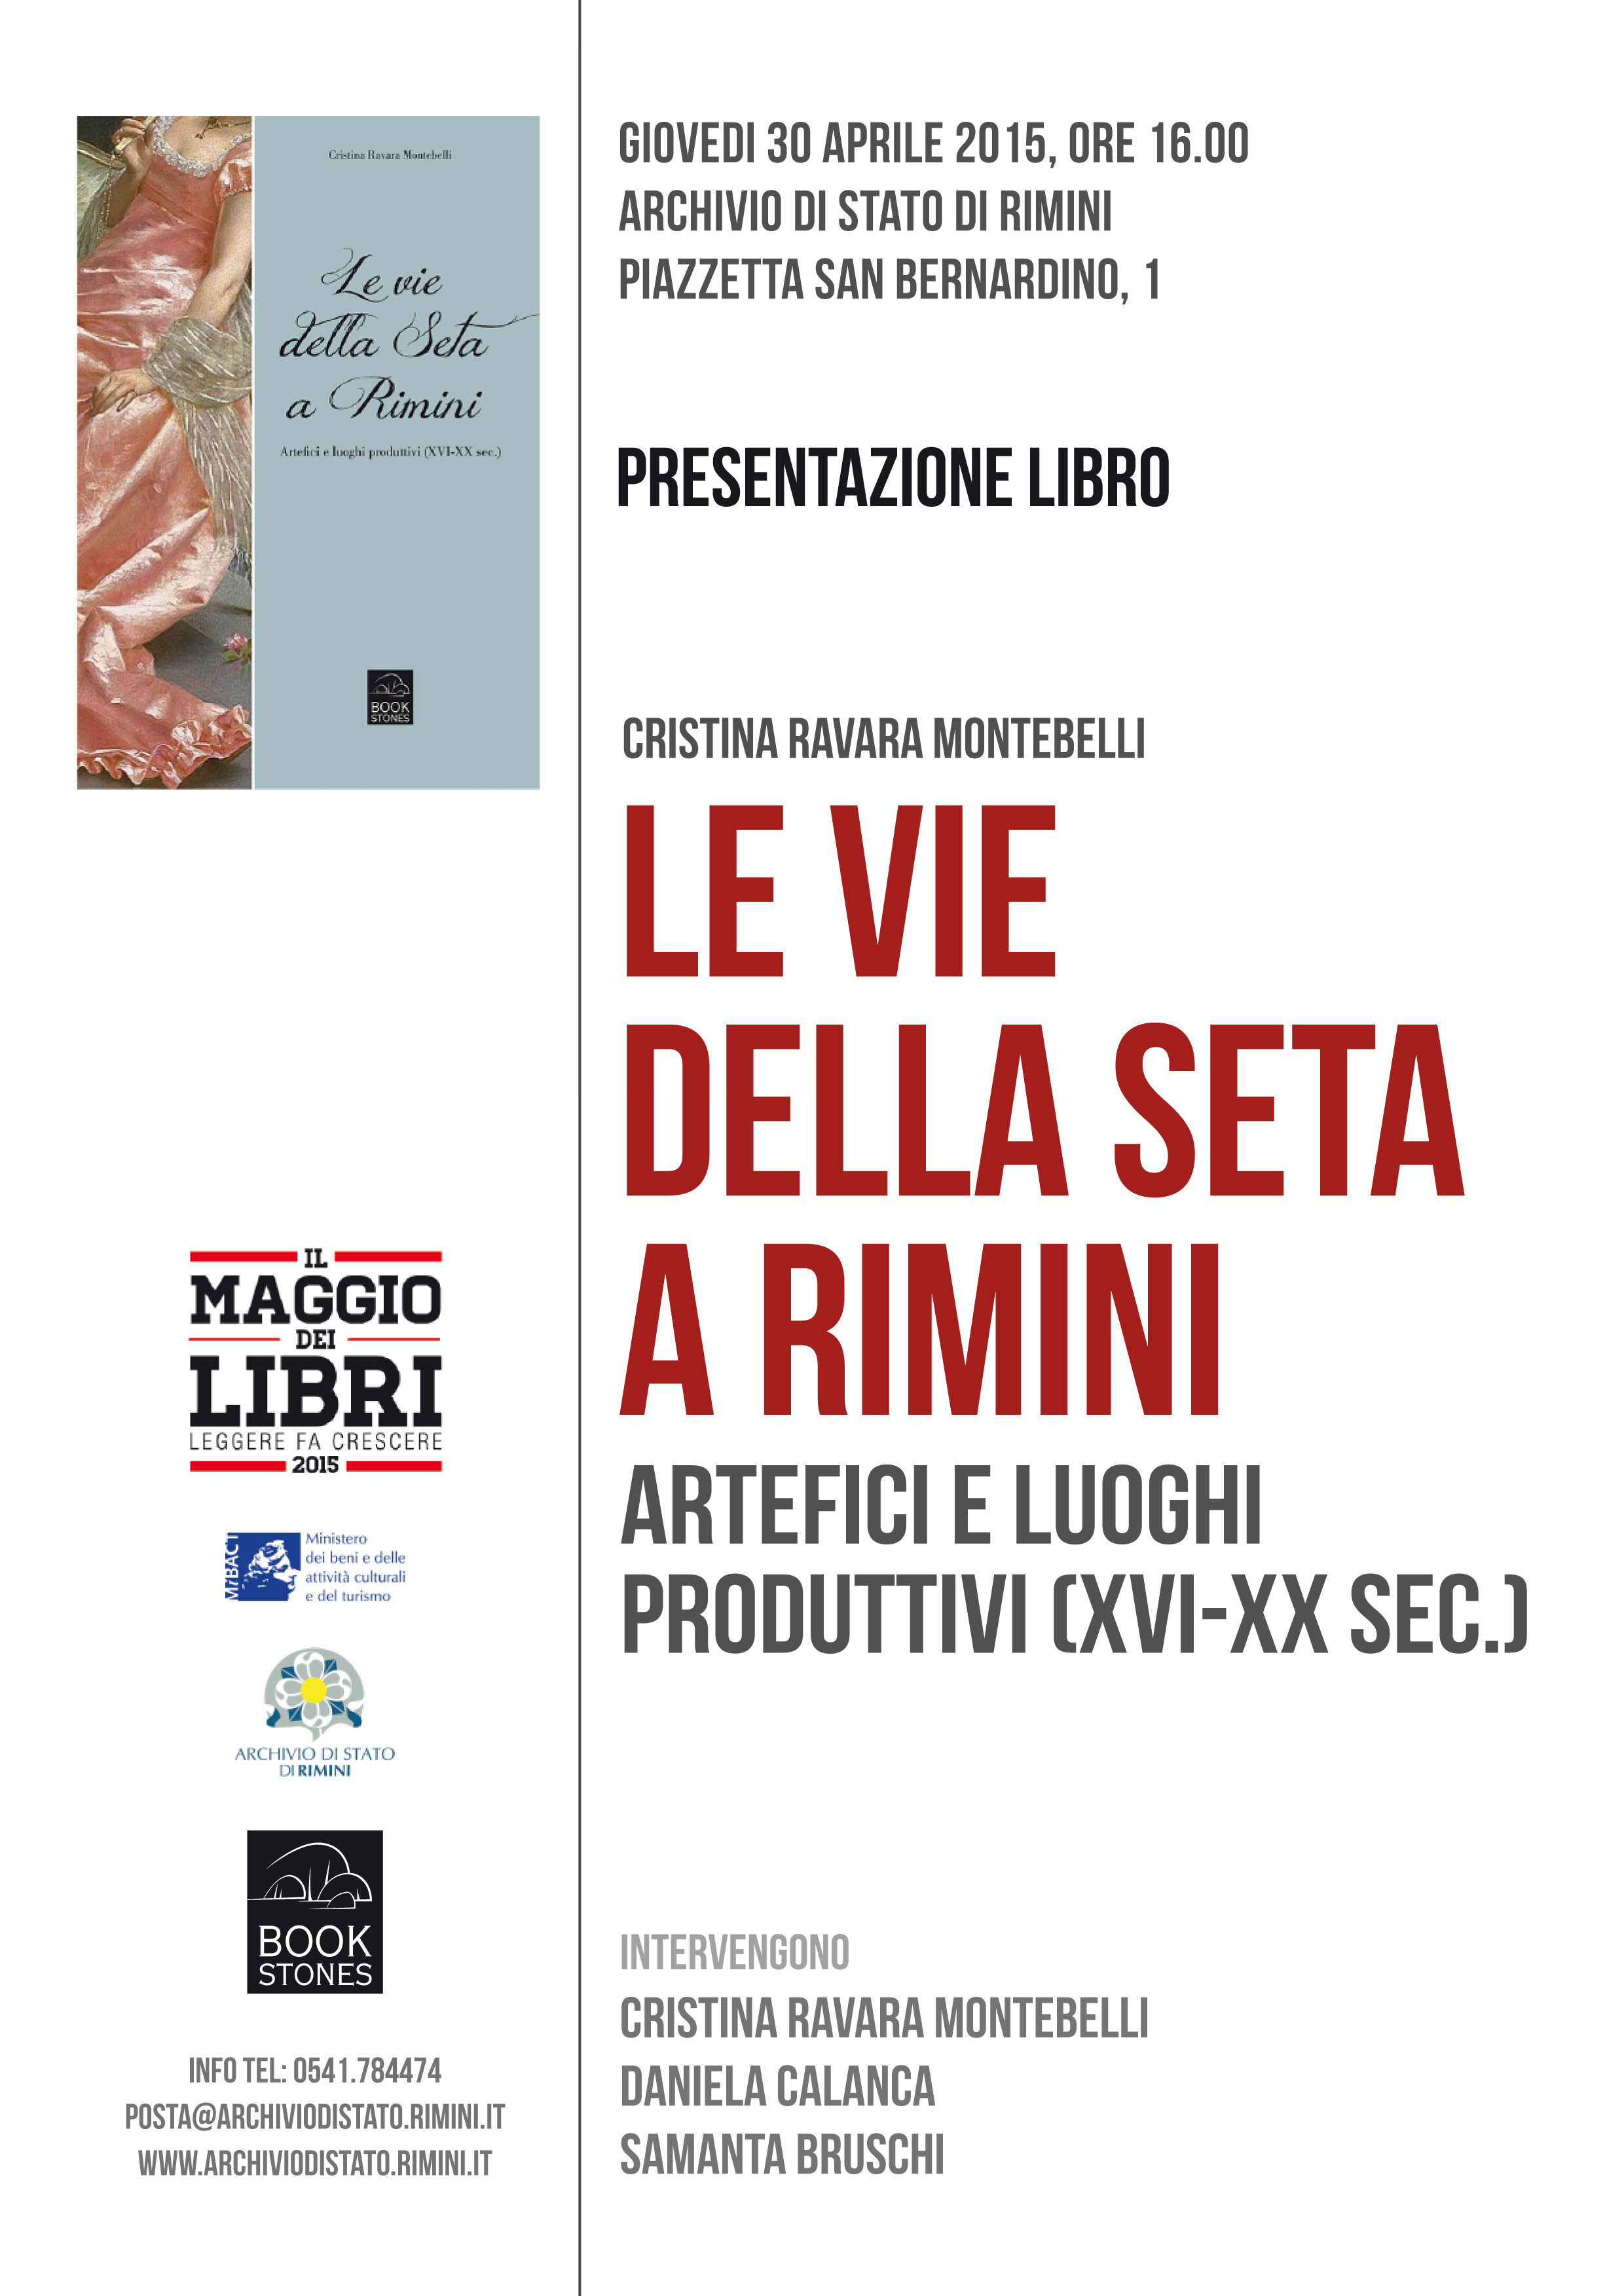 Presentazione libro "Le vie della seta a Rimini, Archivio di Stato di Rimini 30-4-2015